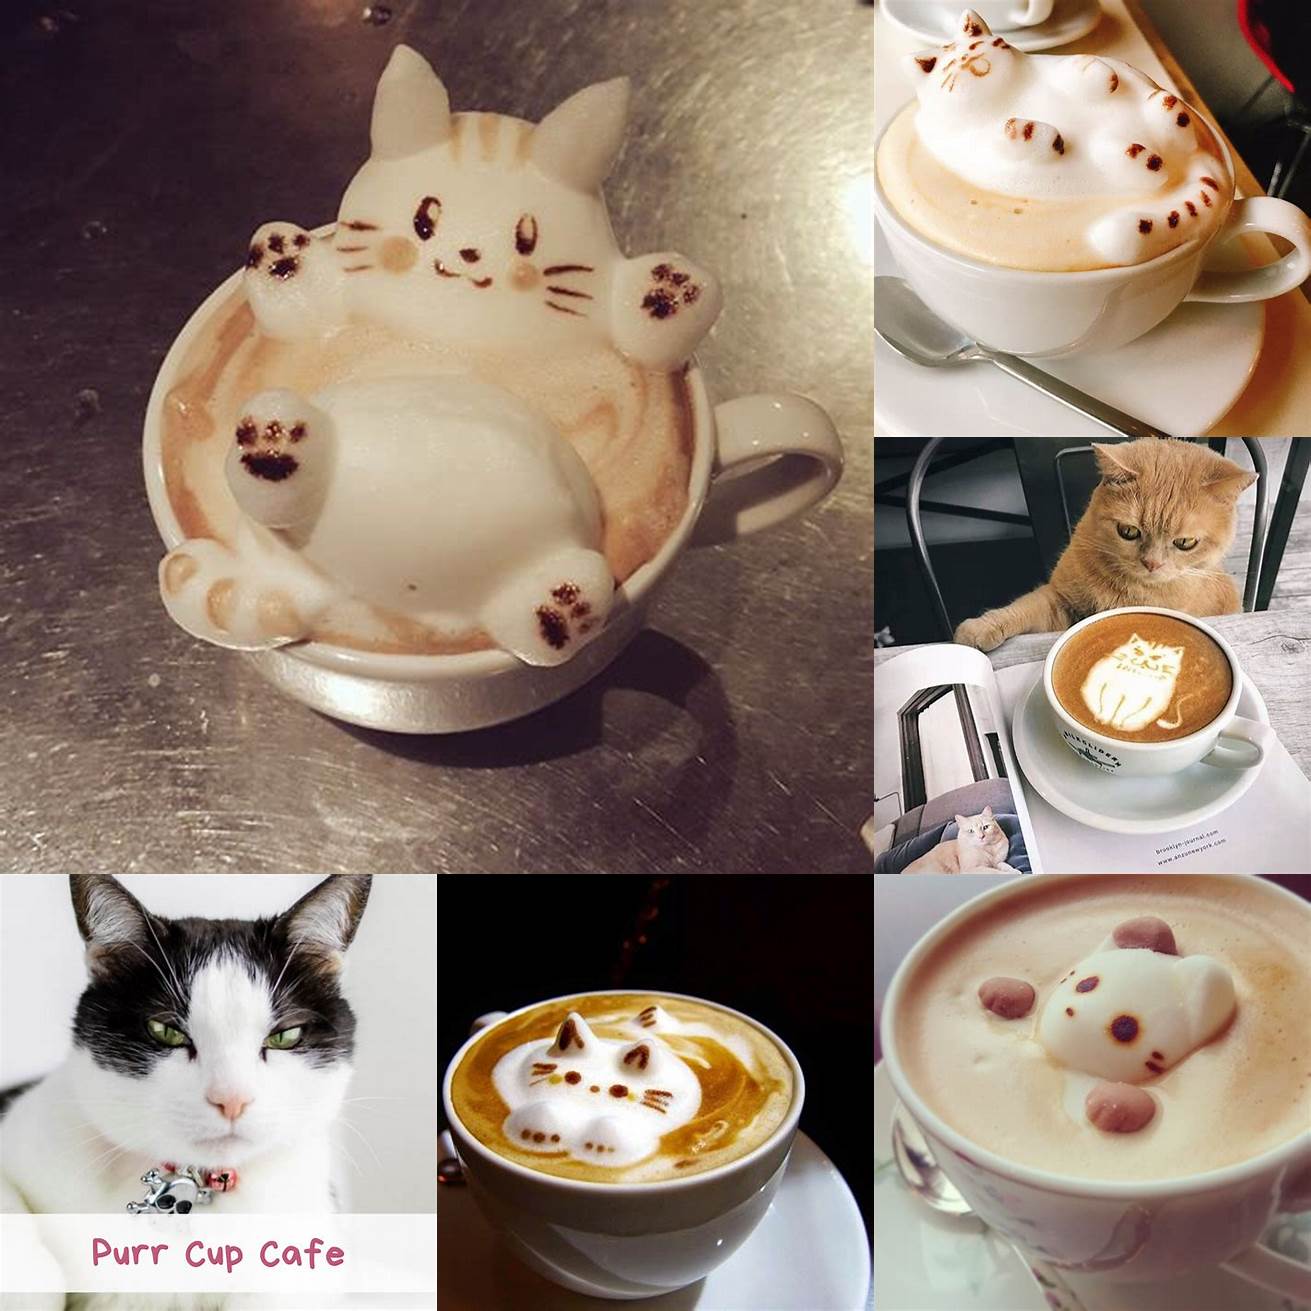 Purr Cup Cafe latte art